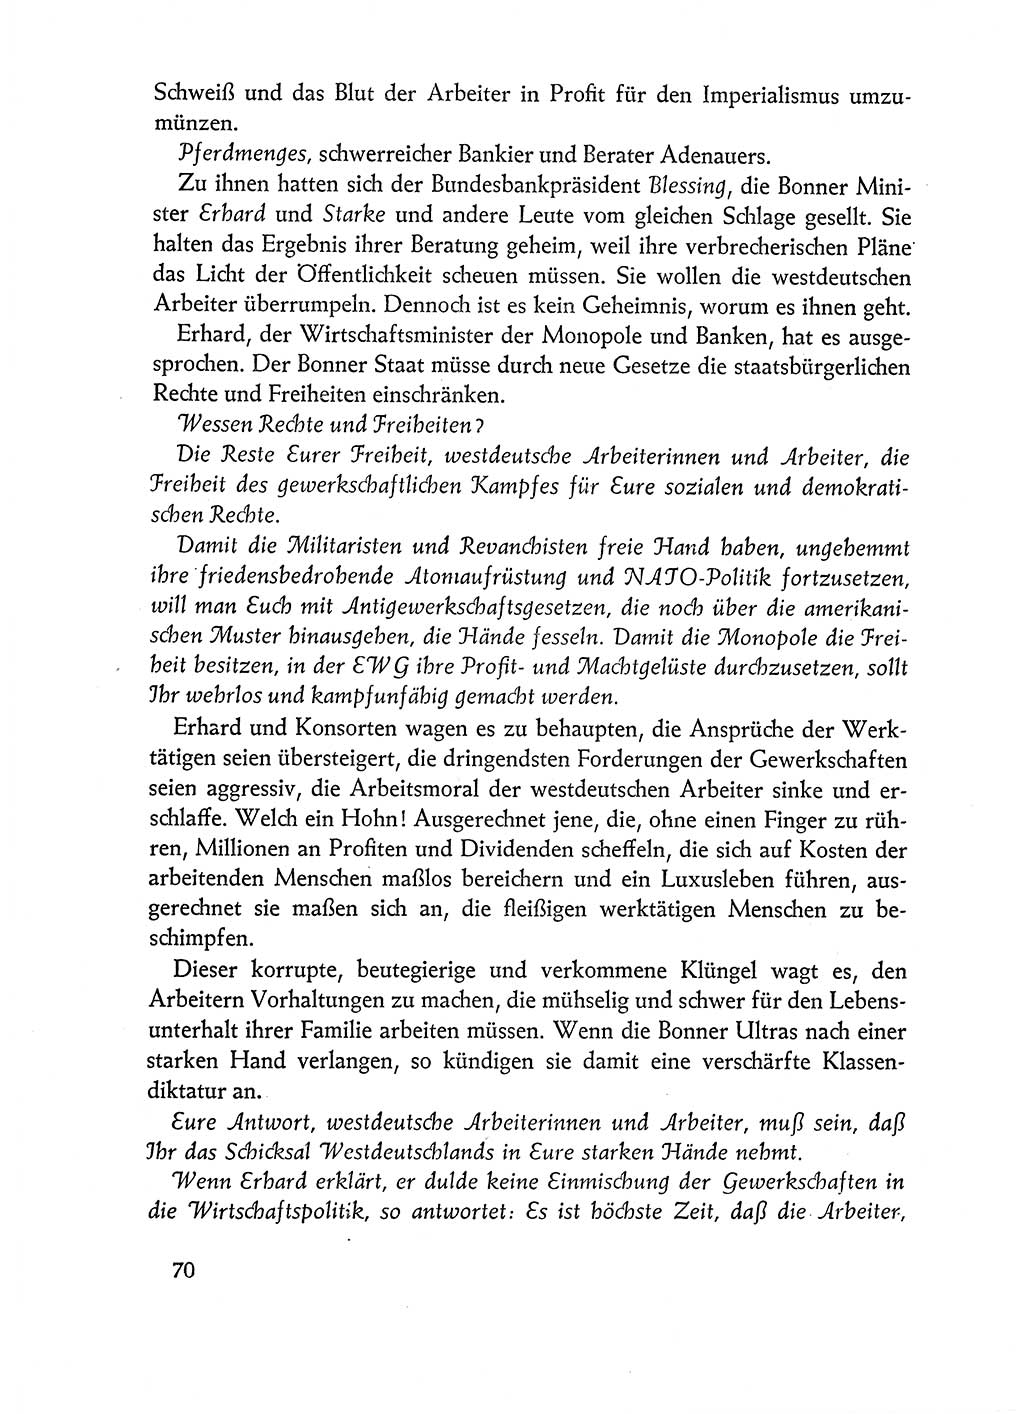 Dokumente der Sozialistischen Einheitspartei Deutschlands (SED) [Deutsche Demokratische Republik (DDR)] 1962-1963, Seite 70 (Dok. SED DDR 1962-1963, S. 70)